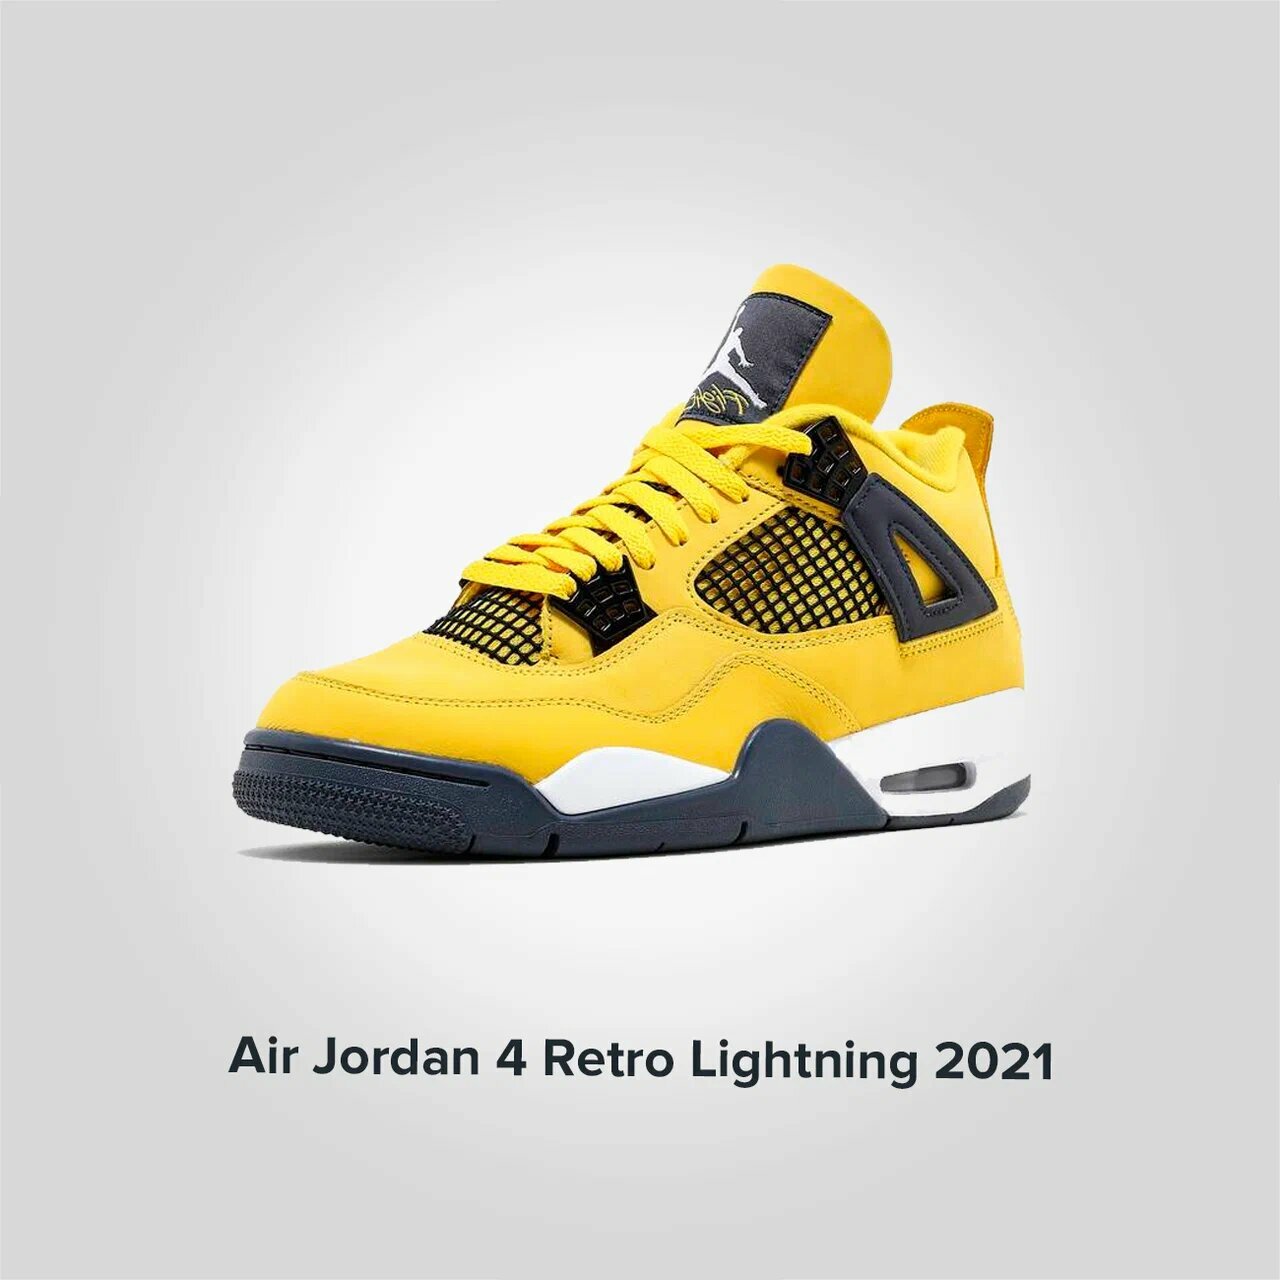 Jordan 4 Retro Lightning 2021